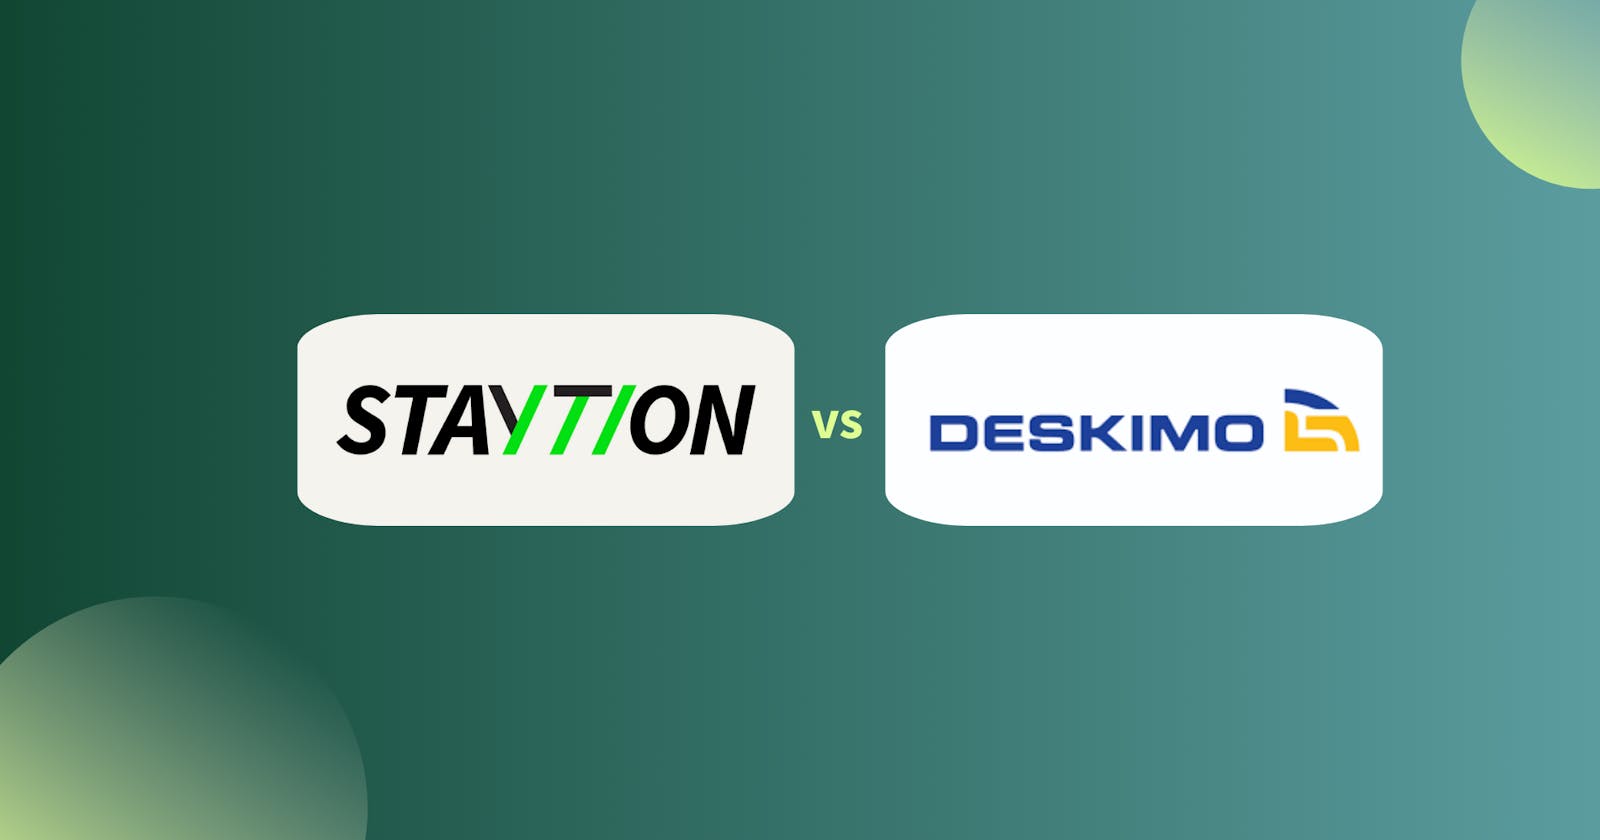 Staytion vs Deskimo - Which Workspace Platform Reigns Supreme